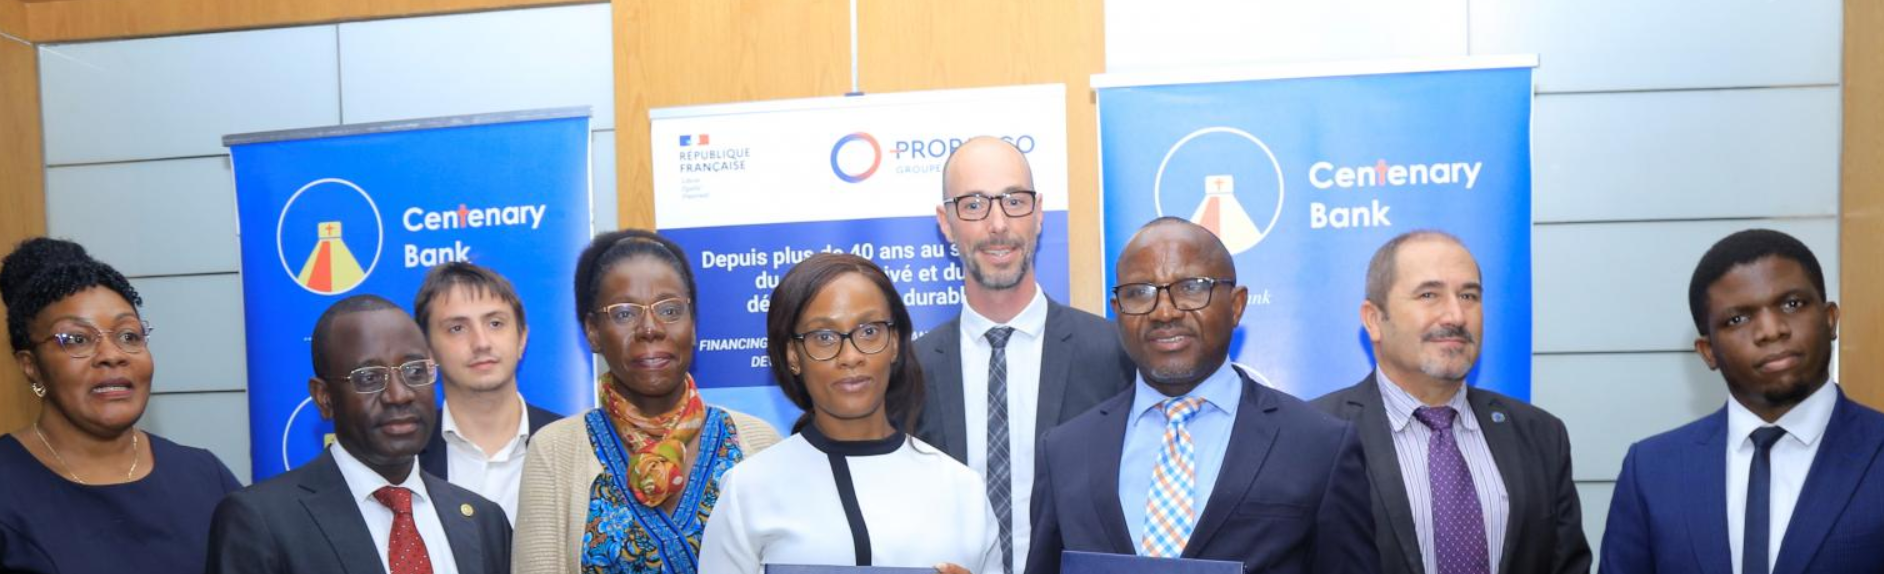 Proparco soutient l’engagement de Centenary Bank en faveur des micro, petites et moyennes entreprises (MPME) en Ouganda | Proparco – Groupe Agence Française de Développement